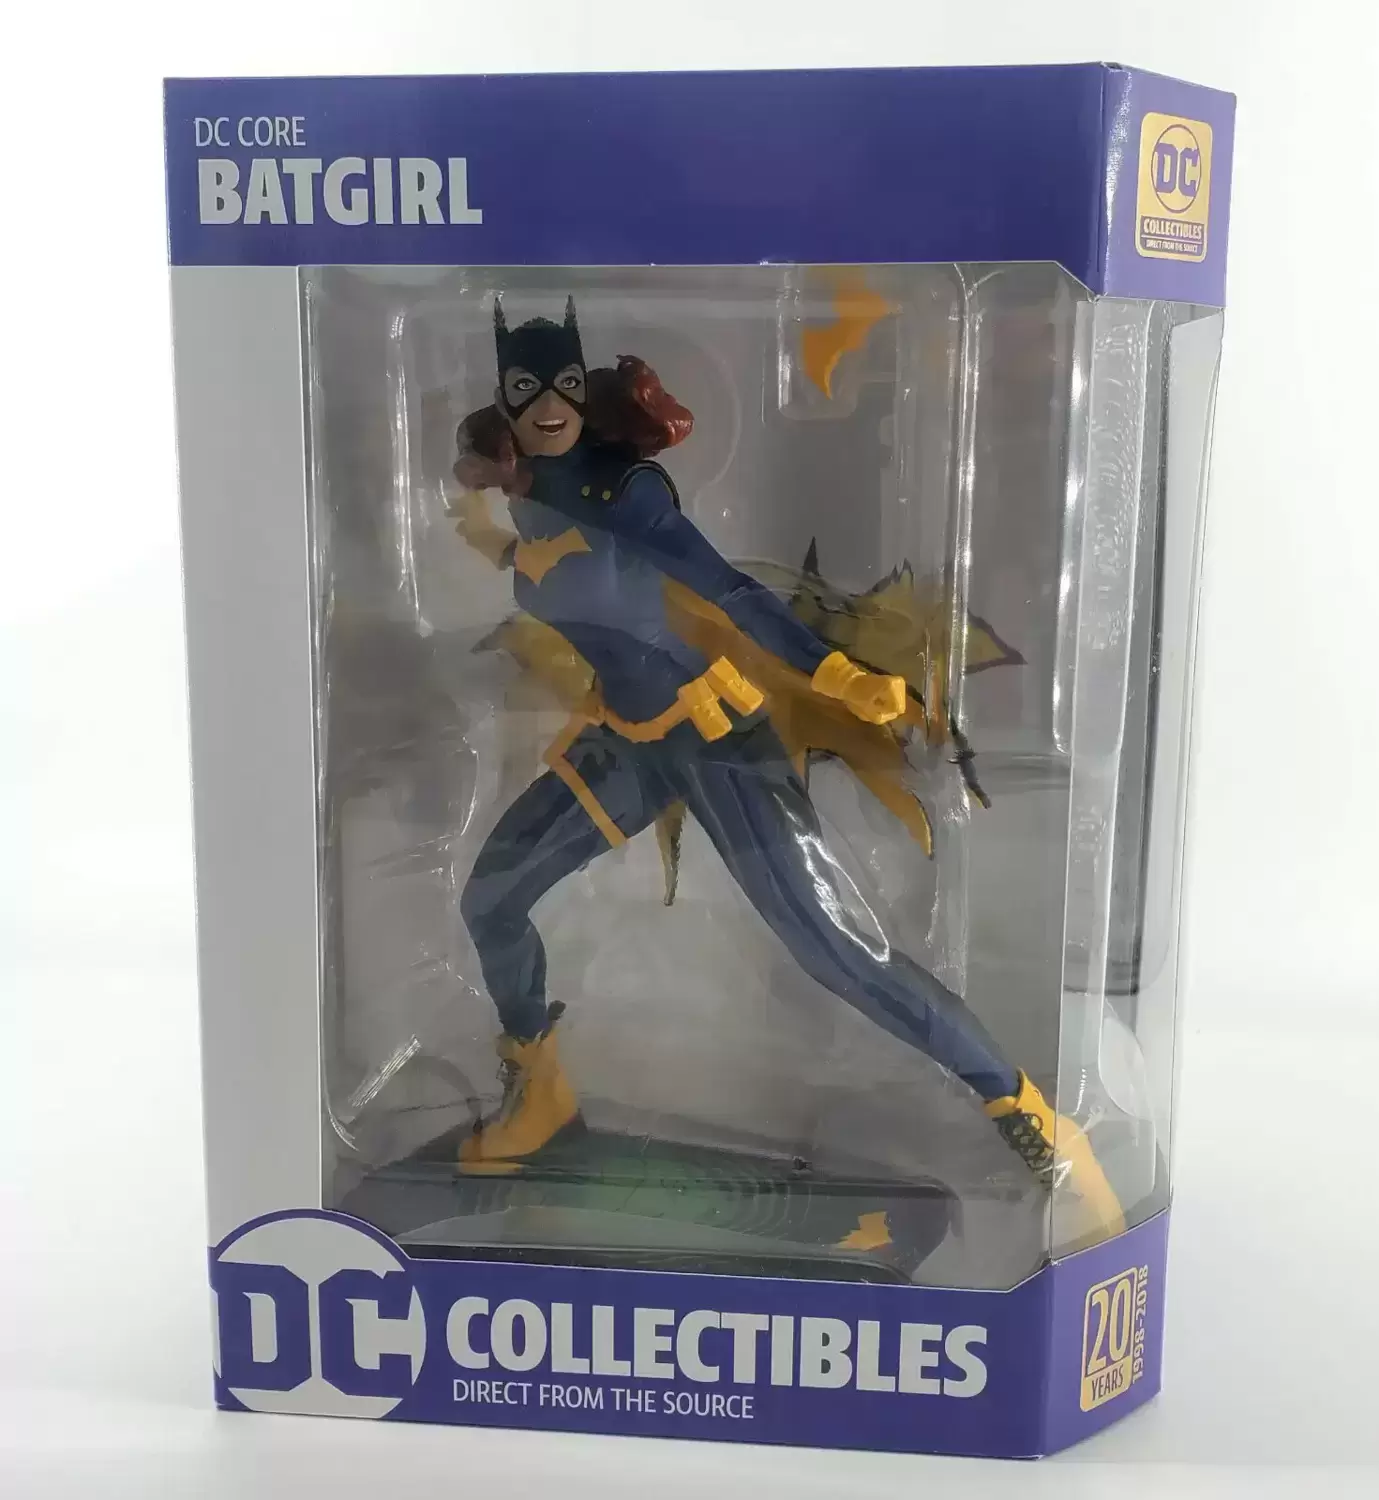 DC Core - DC Collectibles - DC Core - Batgirl